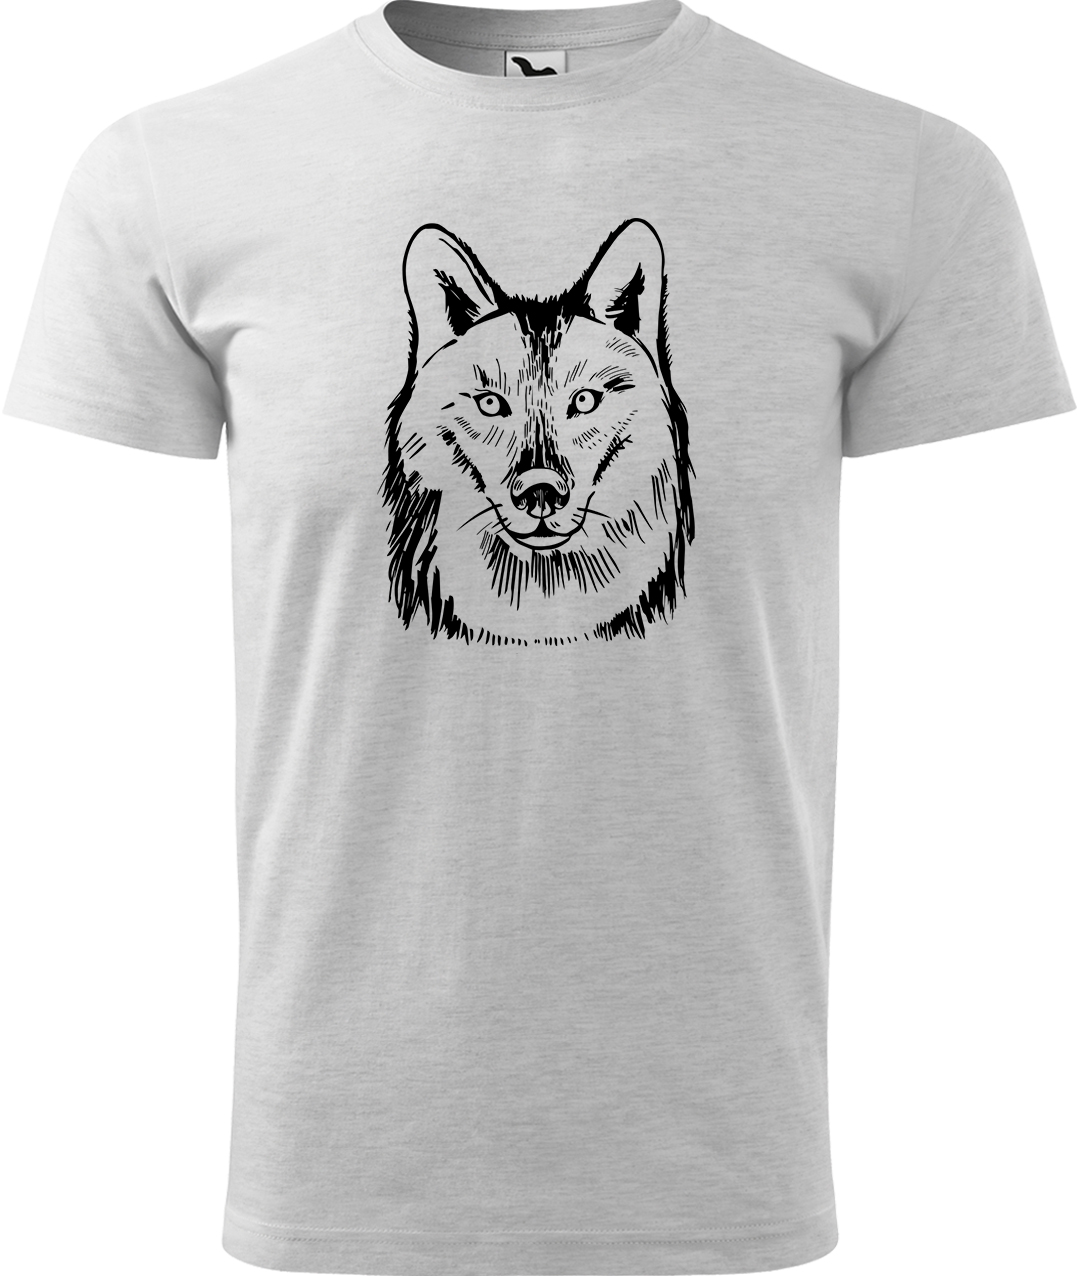 Pánské tričko s vlkem - Kresba vlka Velikost: M, Barva: Světle šedý melír (03), Střih: pánský